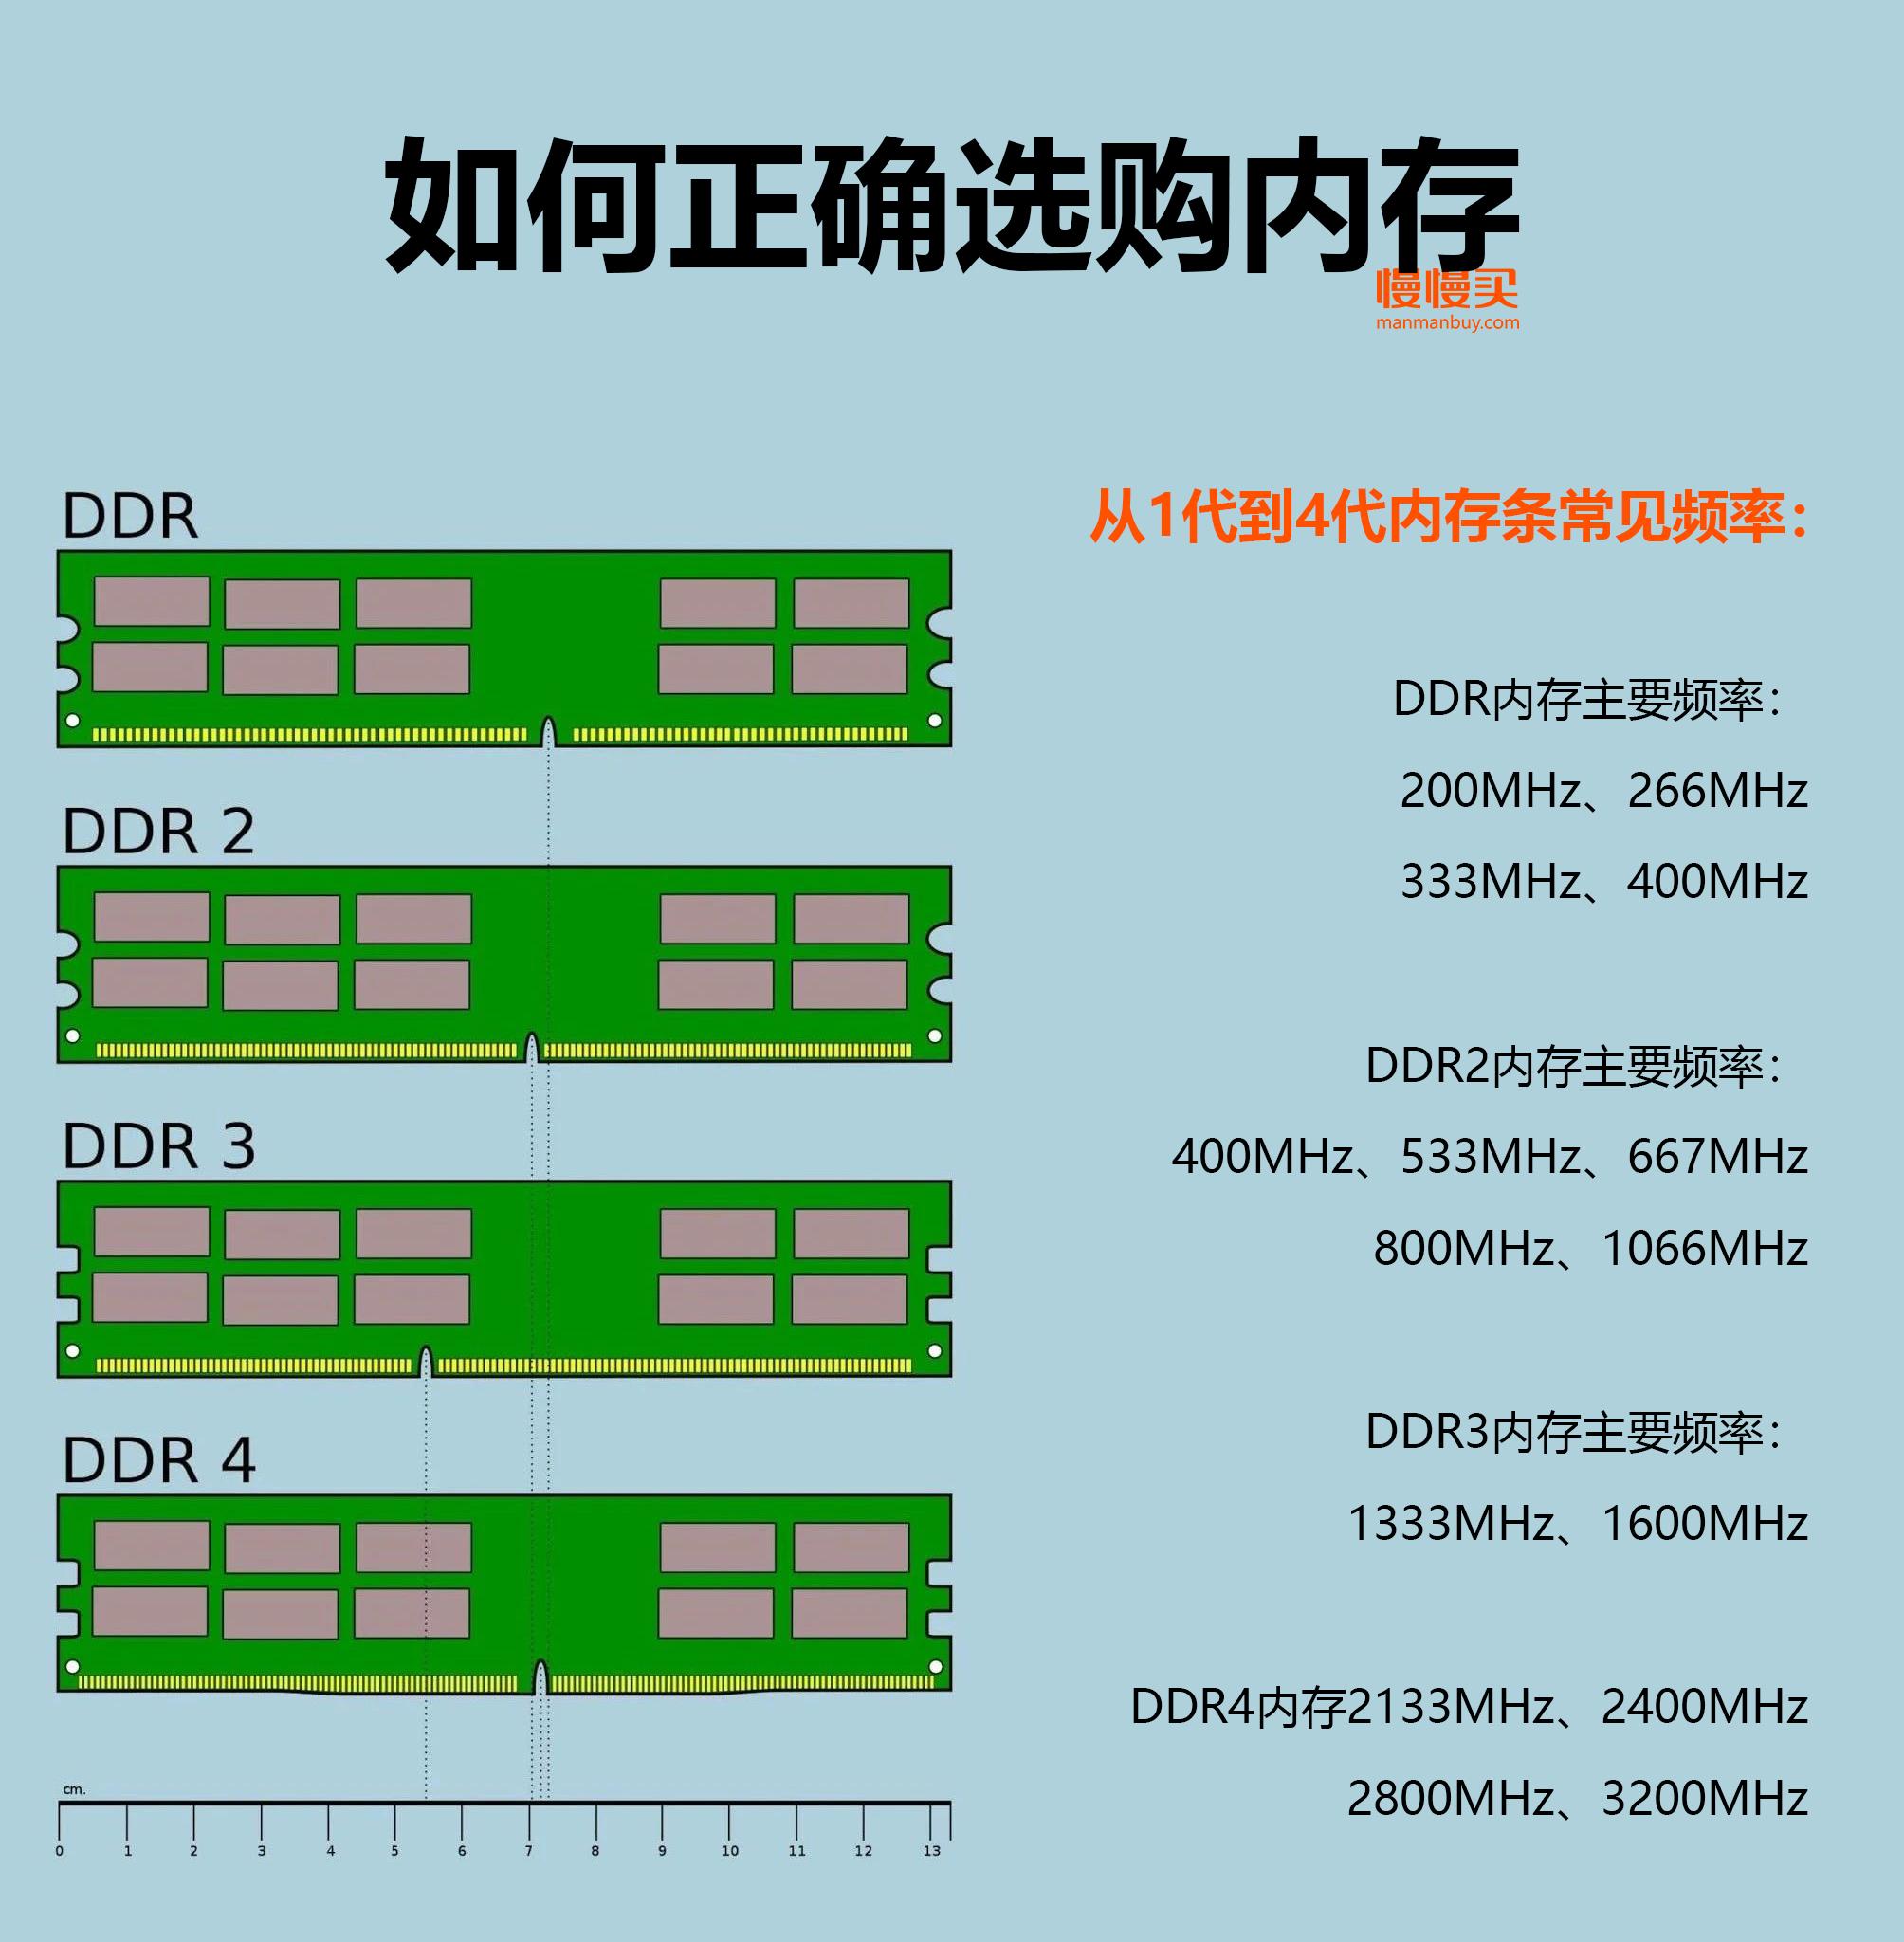 H310 主板：高性价比之选，兼容 DDR4 内存，见证 DDR3 辉煌与落幕  第5张